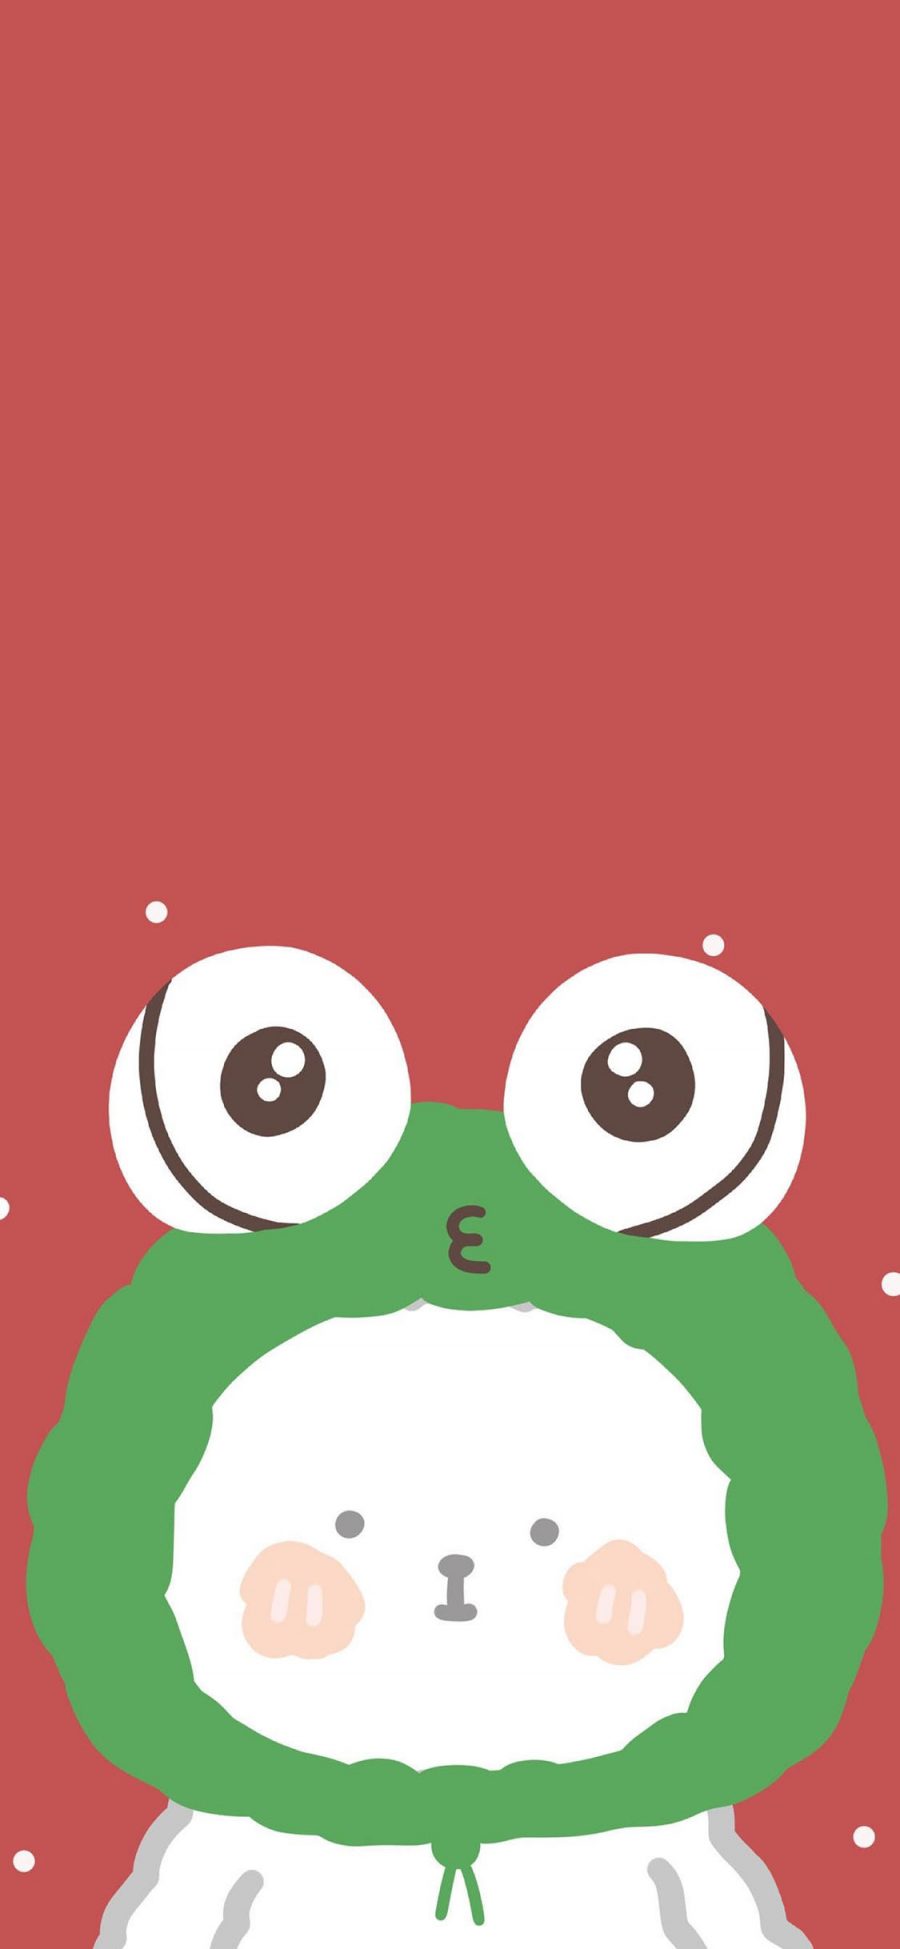 [2436×1125]卡通 小狗 青蛙头 可爱 苹果手机动漫壁纸图片